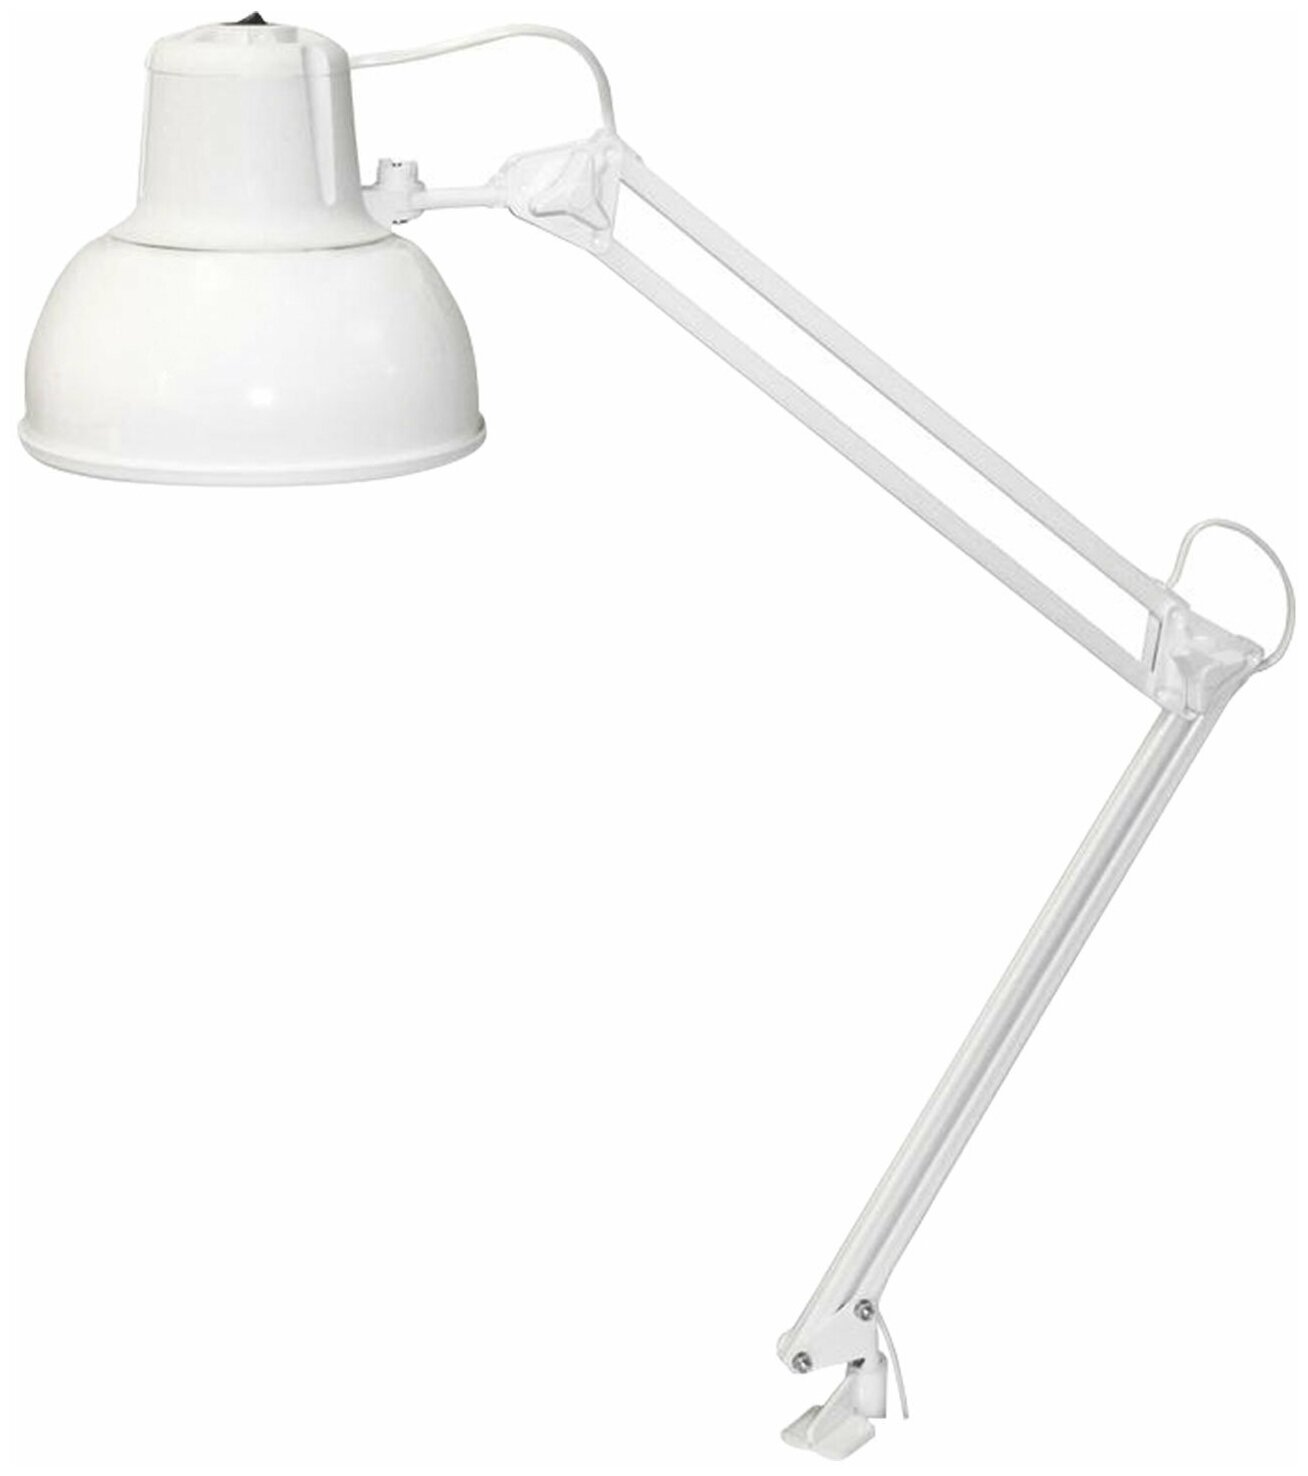 Светильник настольный Бета-К на струбцине лампа нак/люм/светодиод до 60 Вт белый высота 94 см